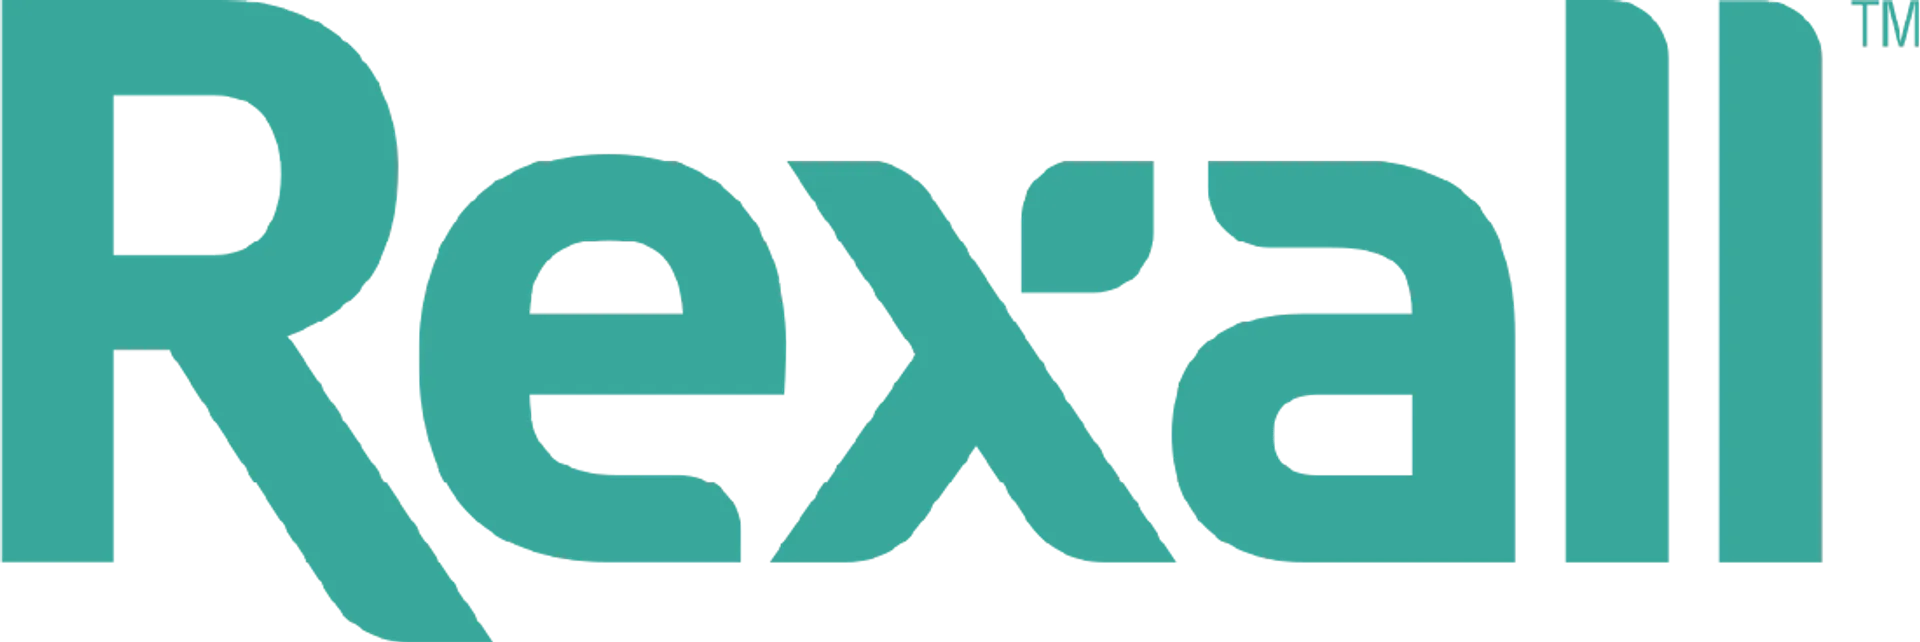 REXALL logo